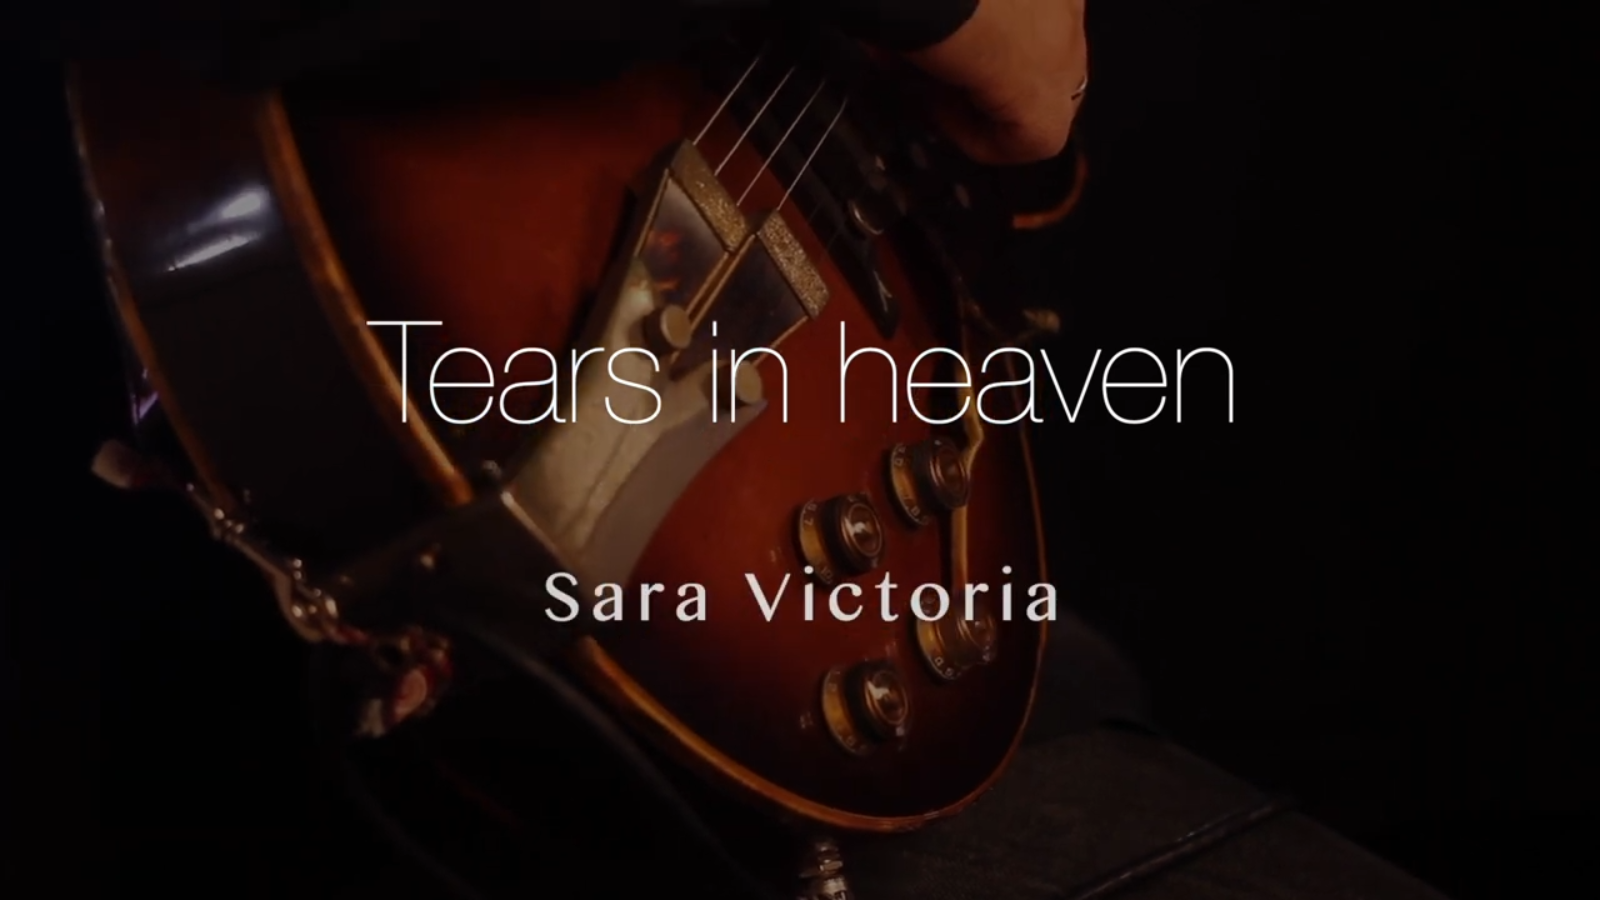 Arcano - Tearc in heaven